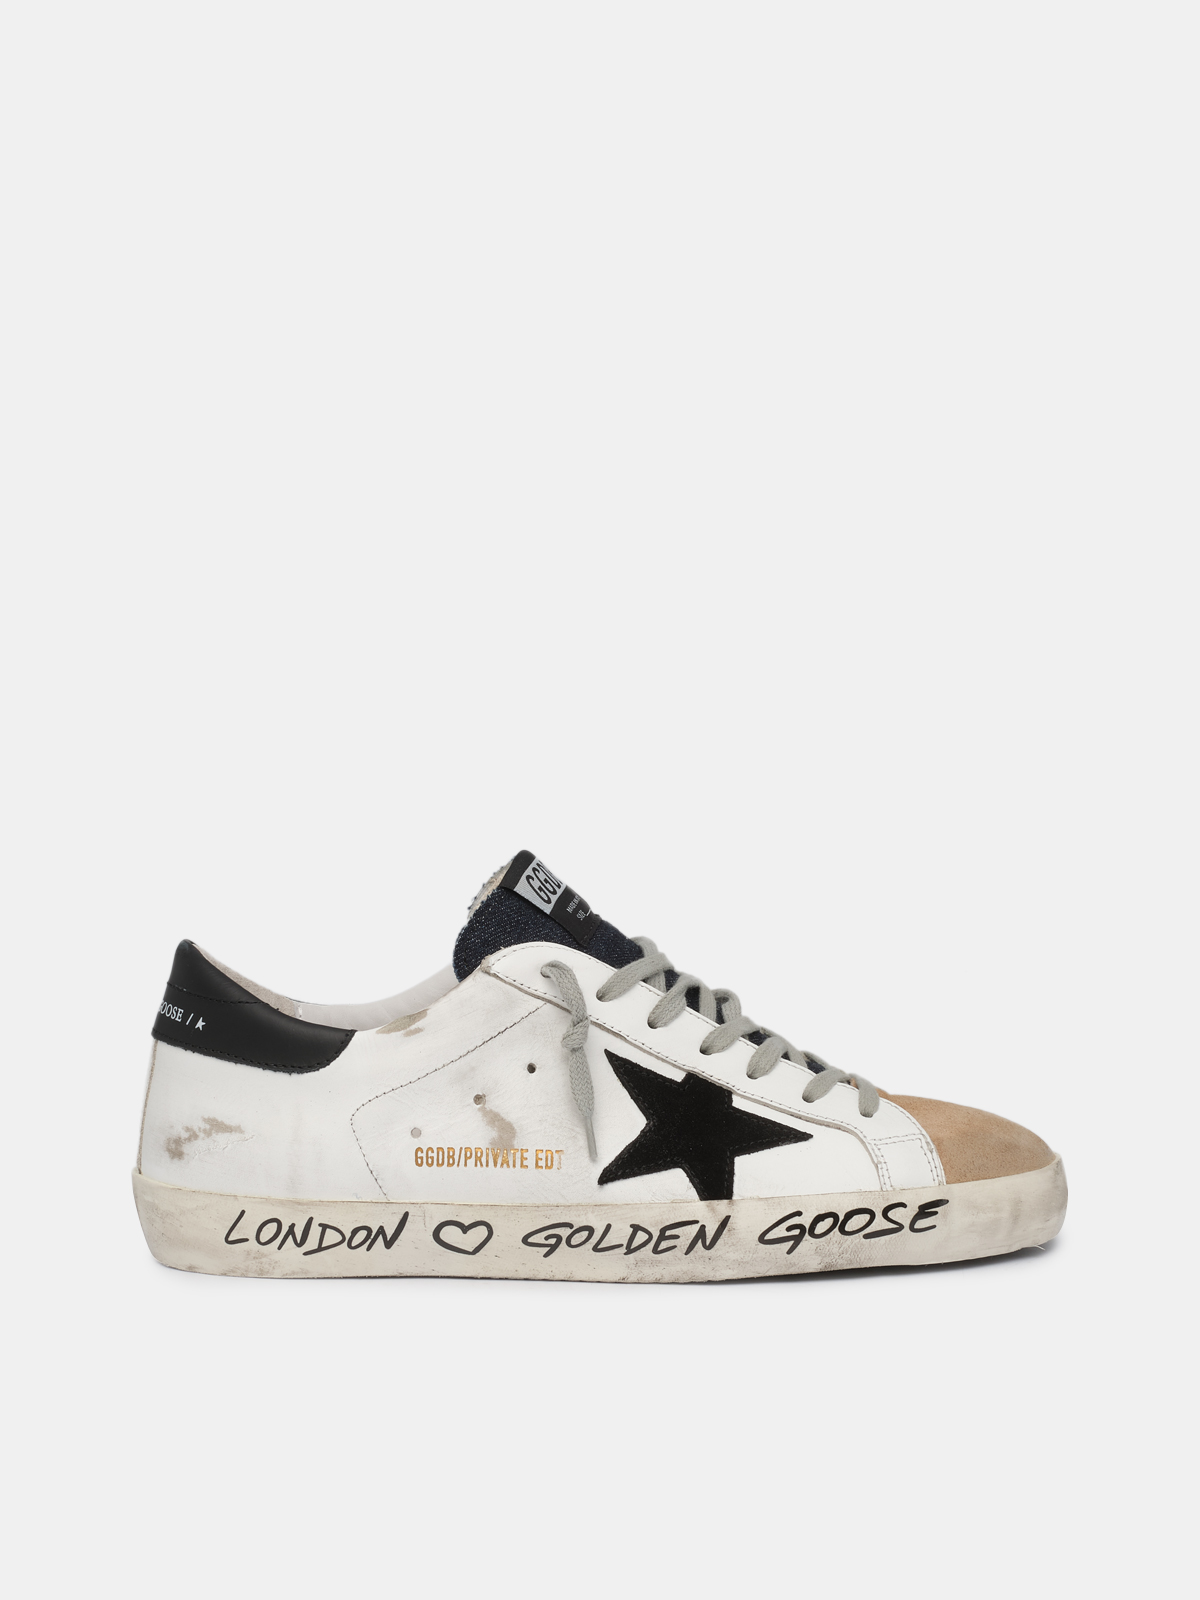 White beige sneakers with handwritten wording Golden Goose